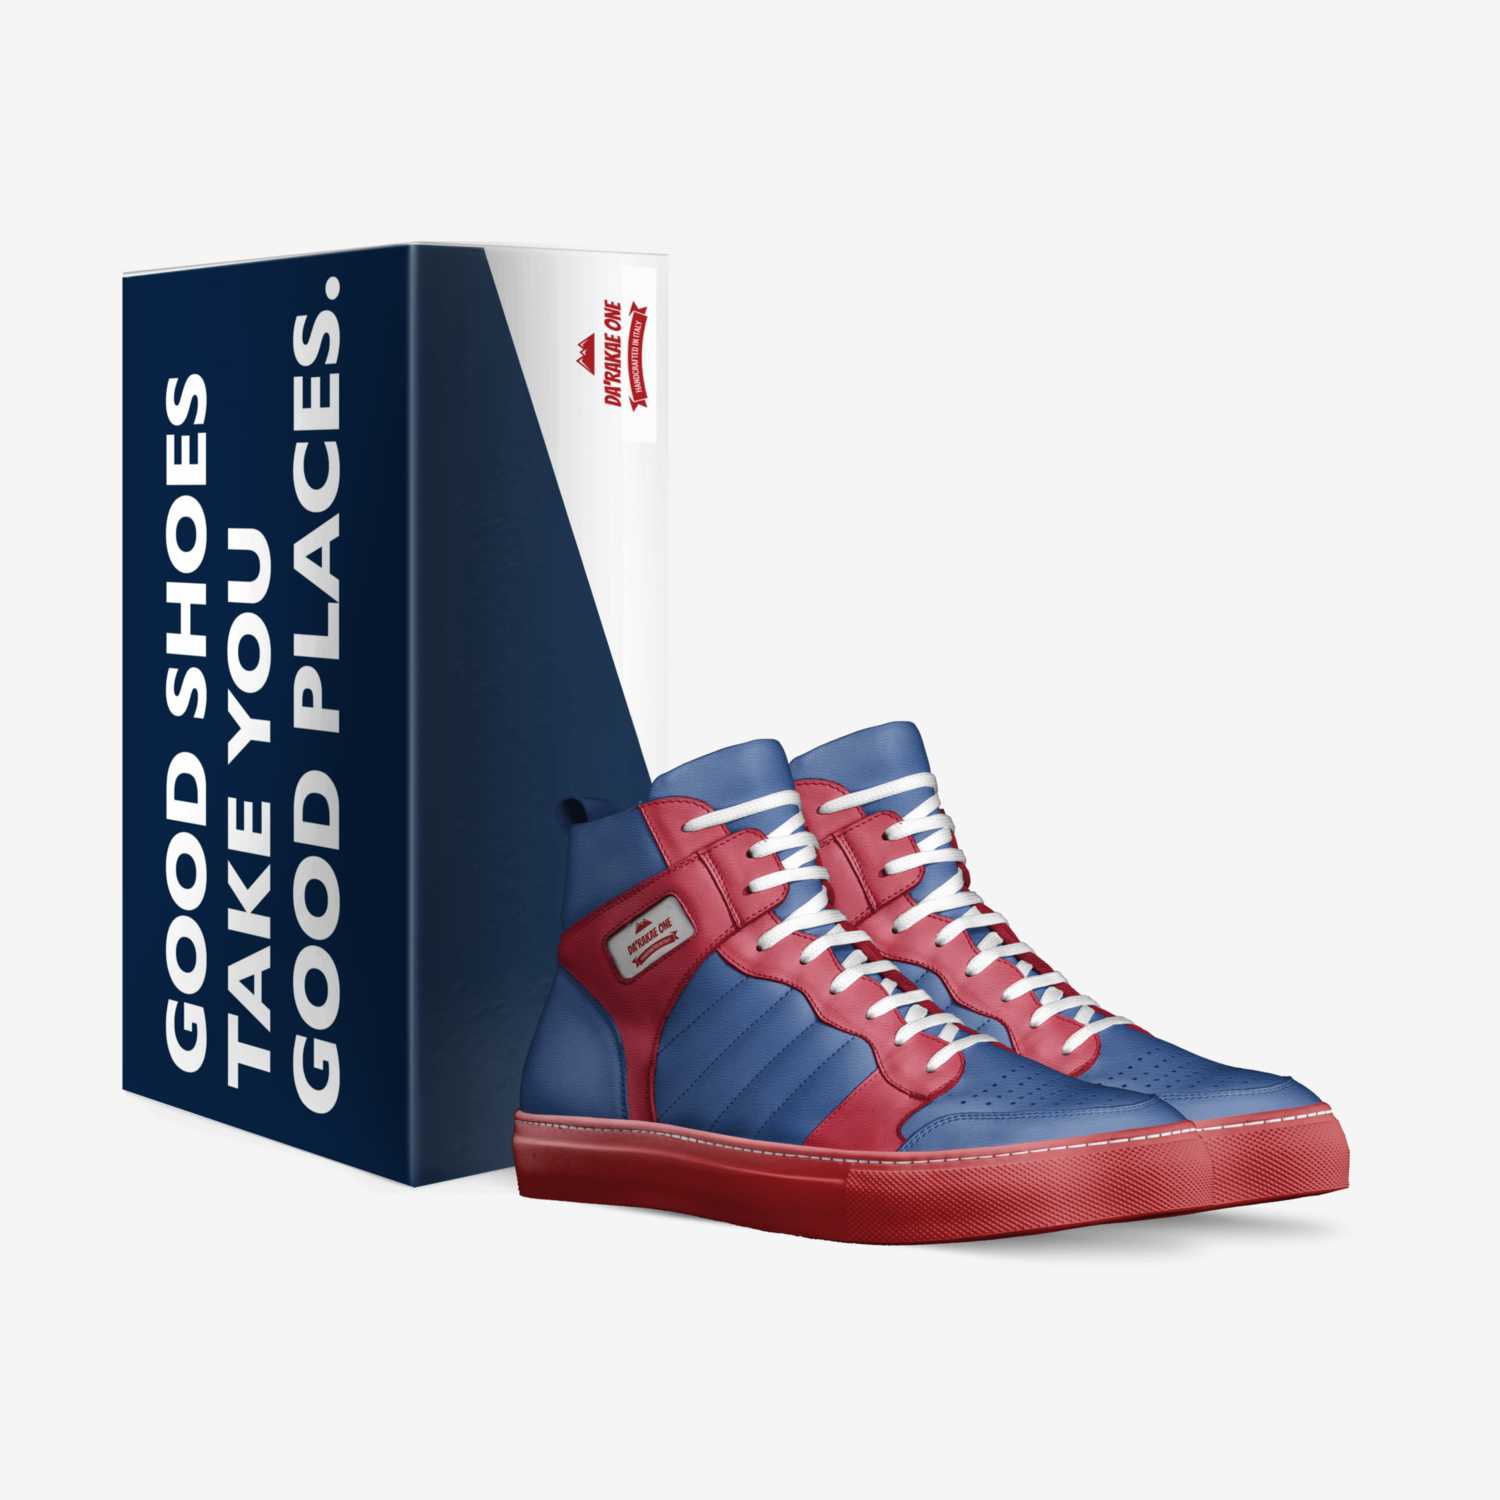 Da'rakae ONE custom made in Italy shoes by Drake Nisbet | Box view